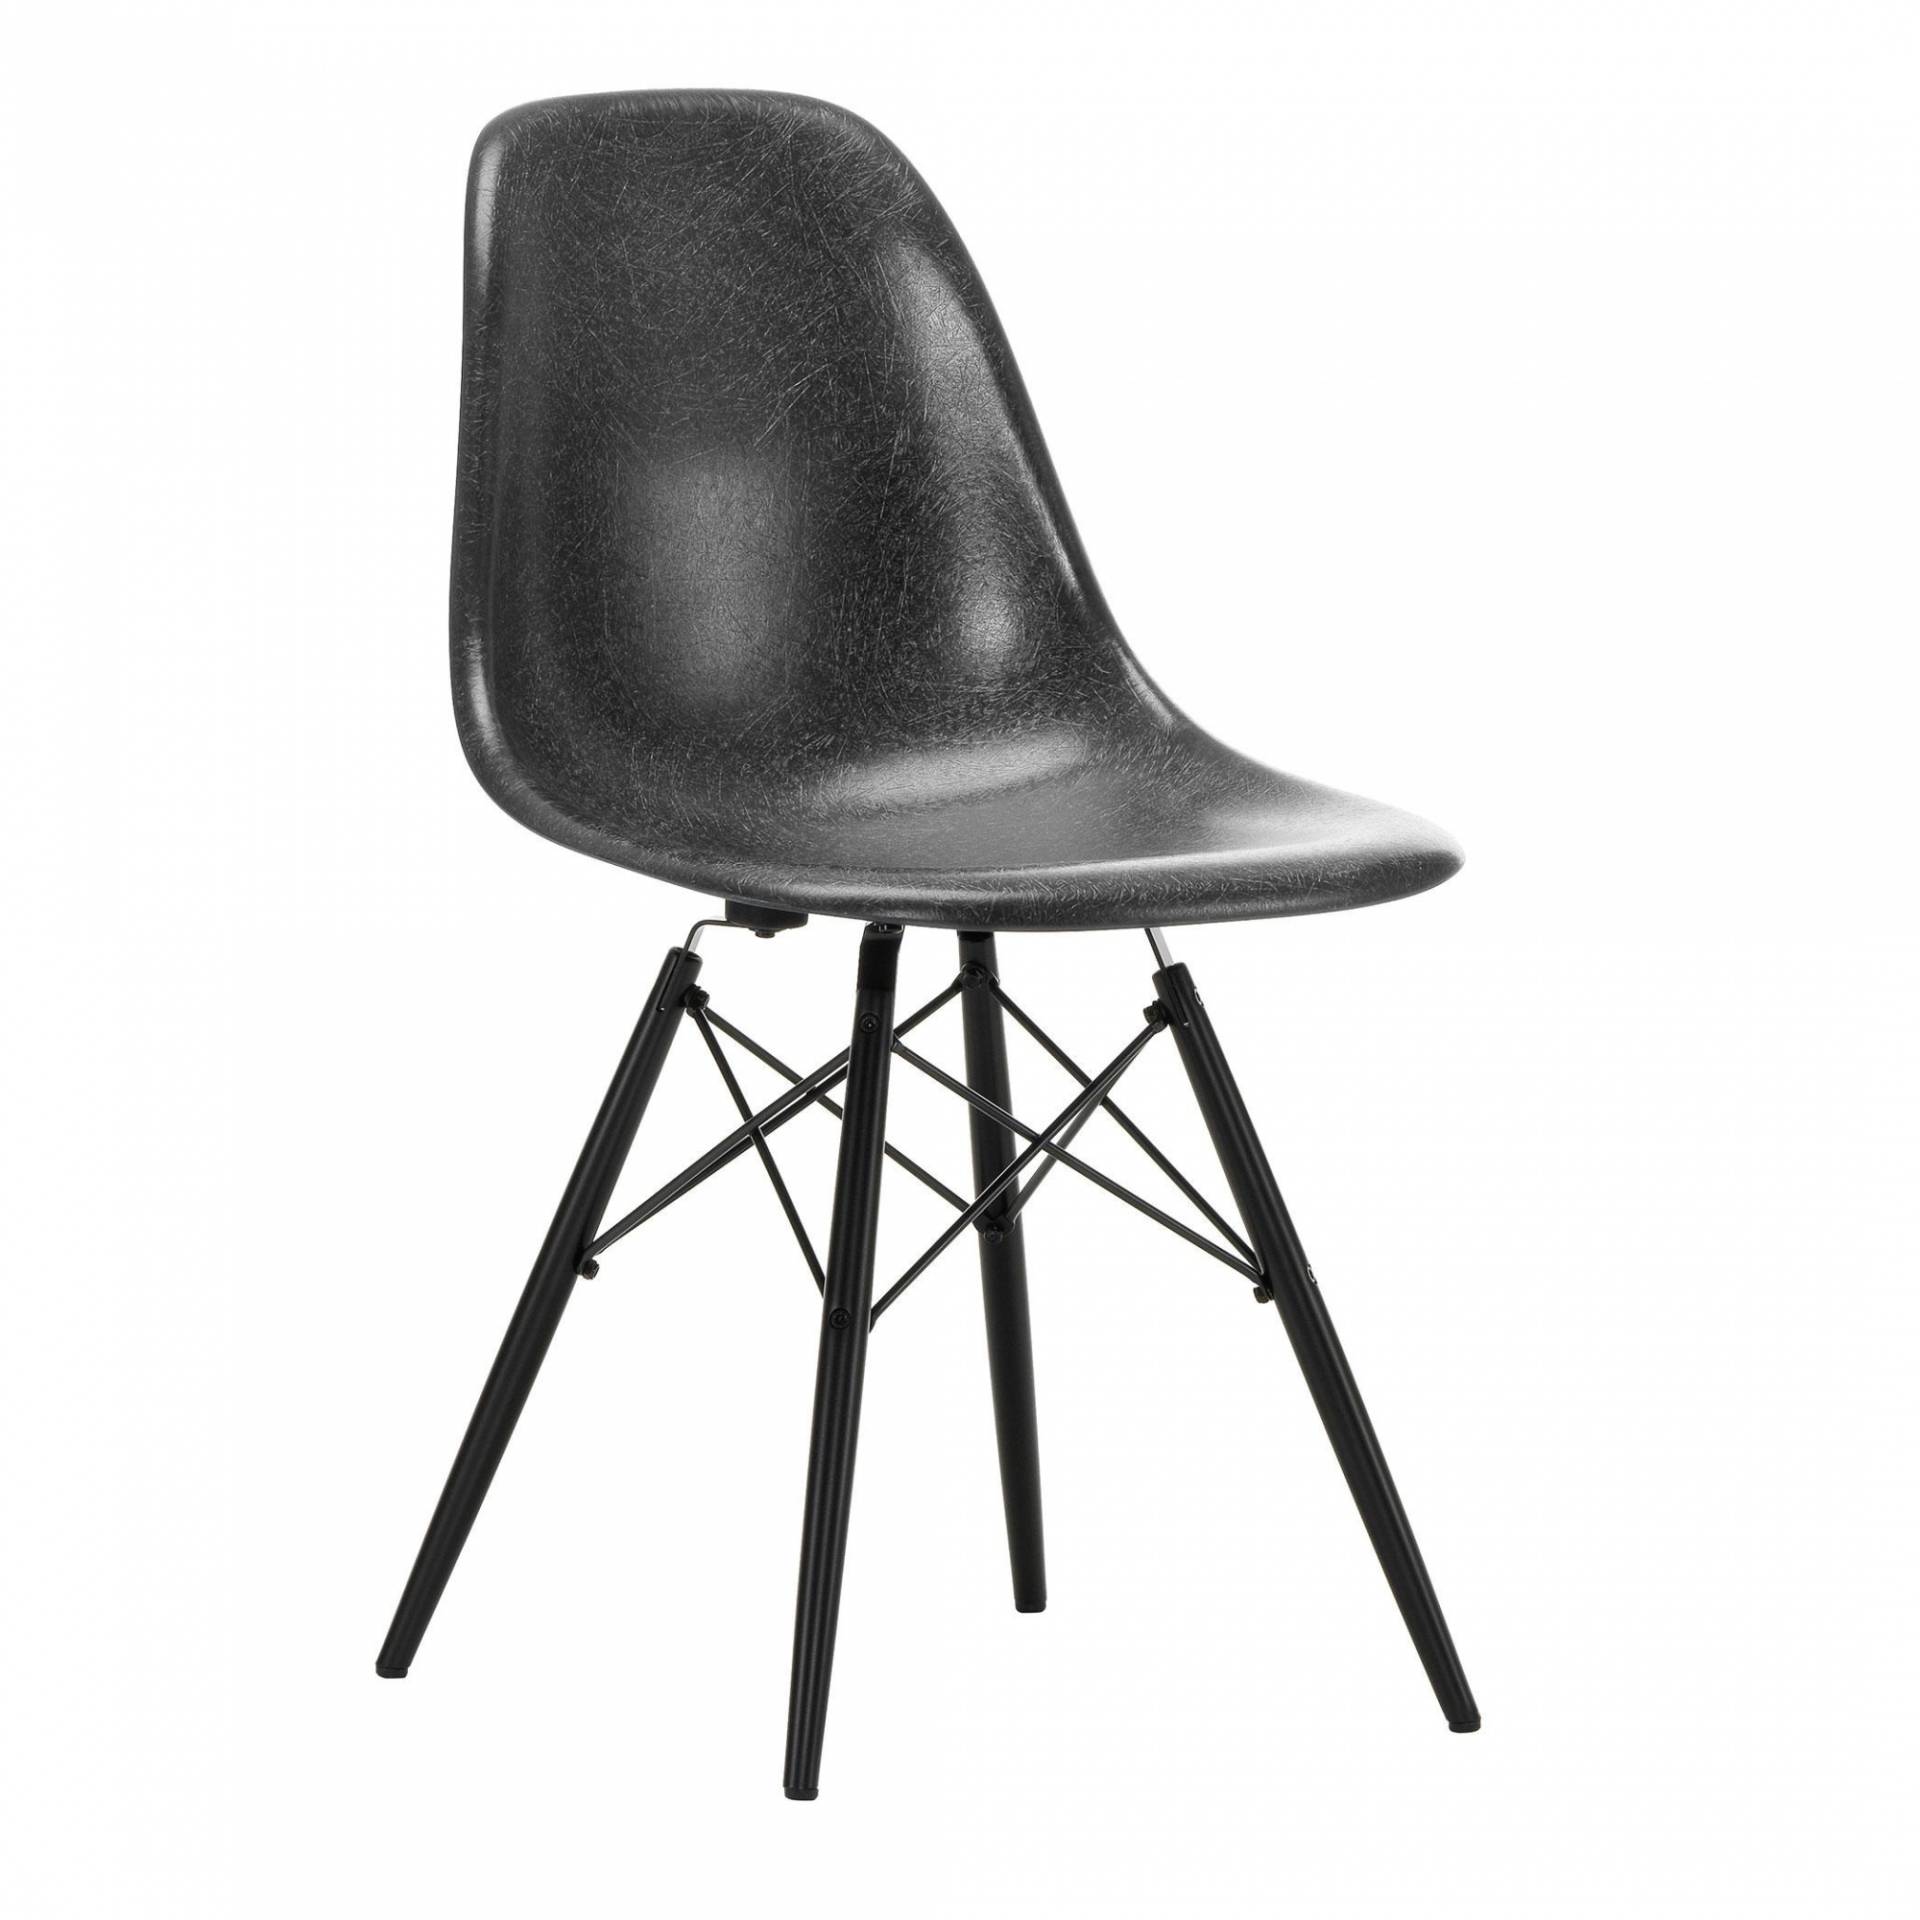 Vitra - Eames Fiberglass Side Chair DSW Ahorn schwarz - Elefantengrau/Sitzschale Fieberglas/Gestell Ahorn schwarz/Stahl schwarz/BxHxT 46,5x83x55cm von Vitra